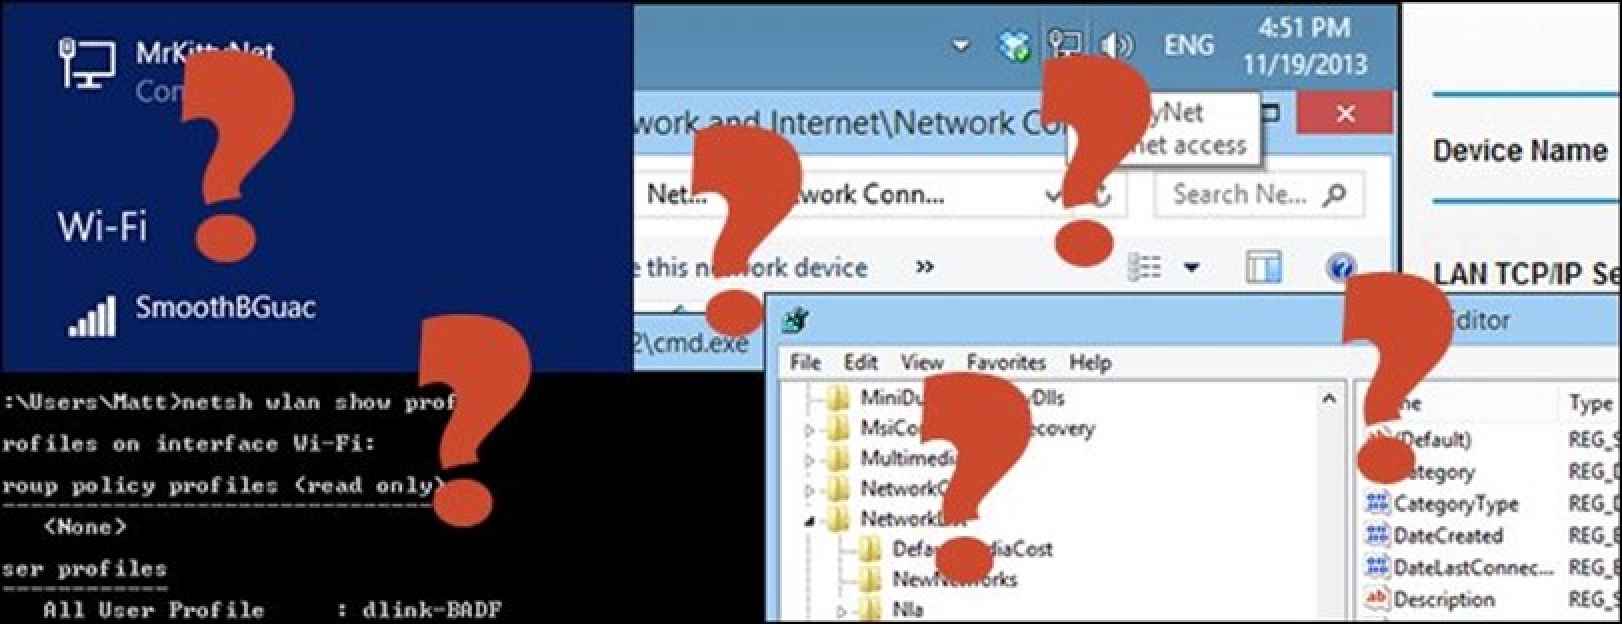 Nola "ahaztu" sare kable (edo haririk gabeko) sarea Windows 8.1